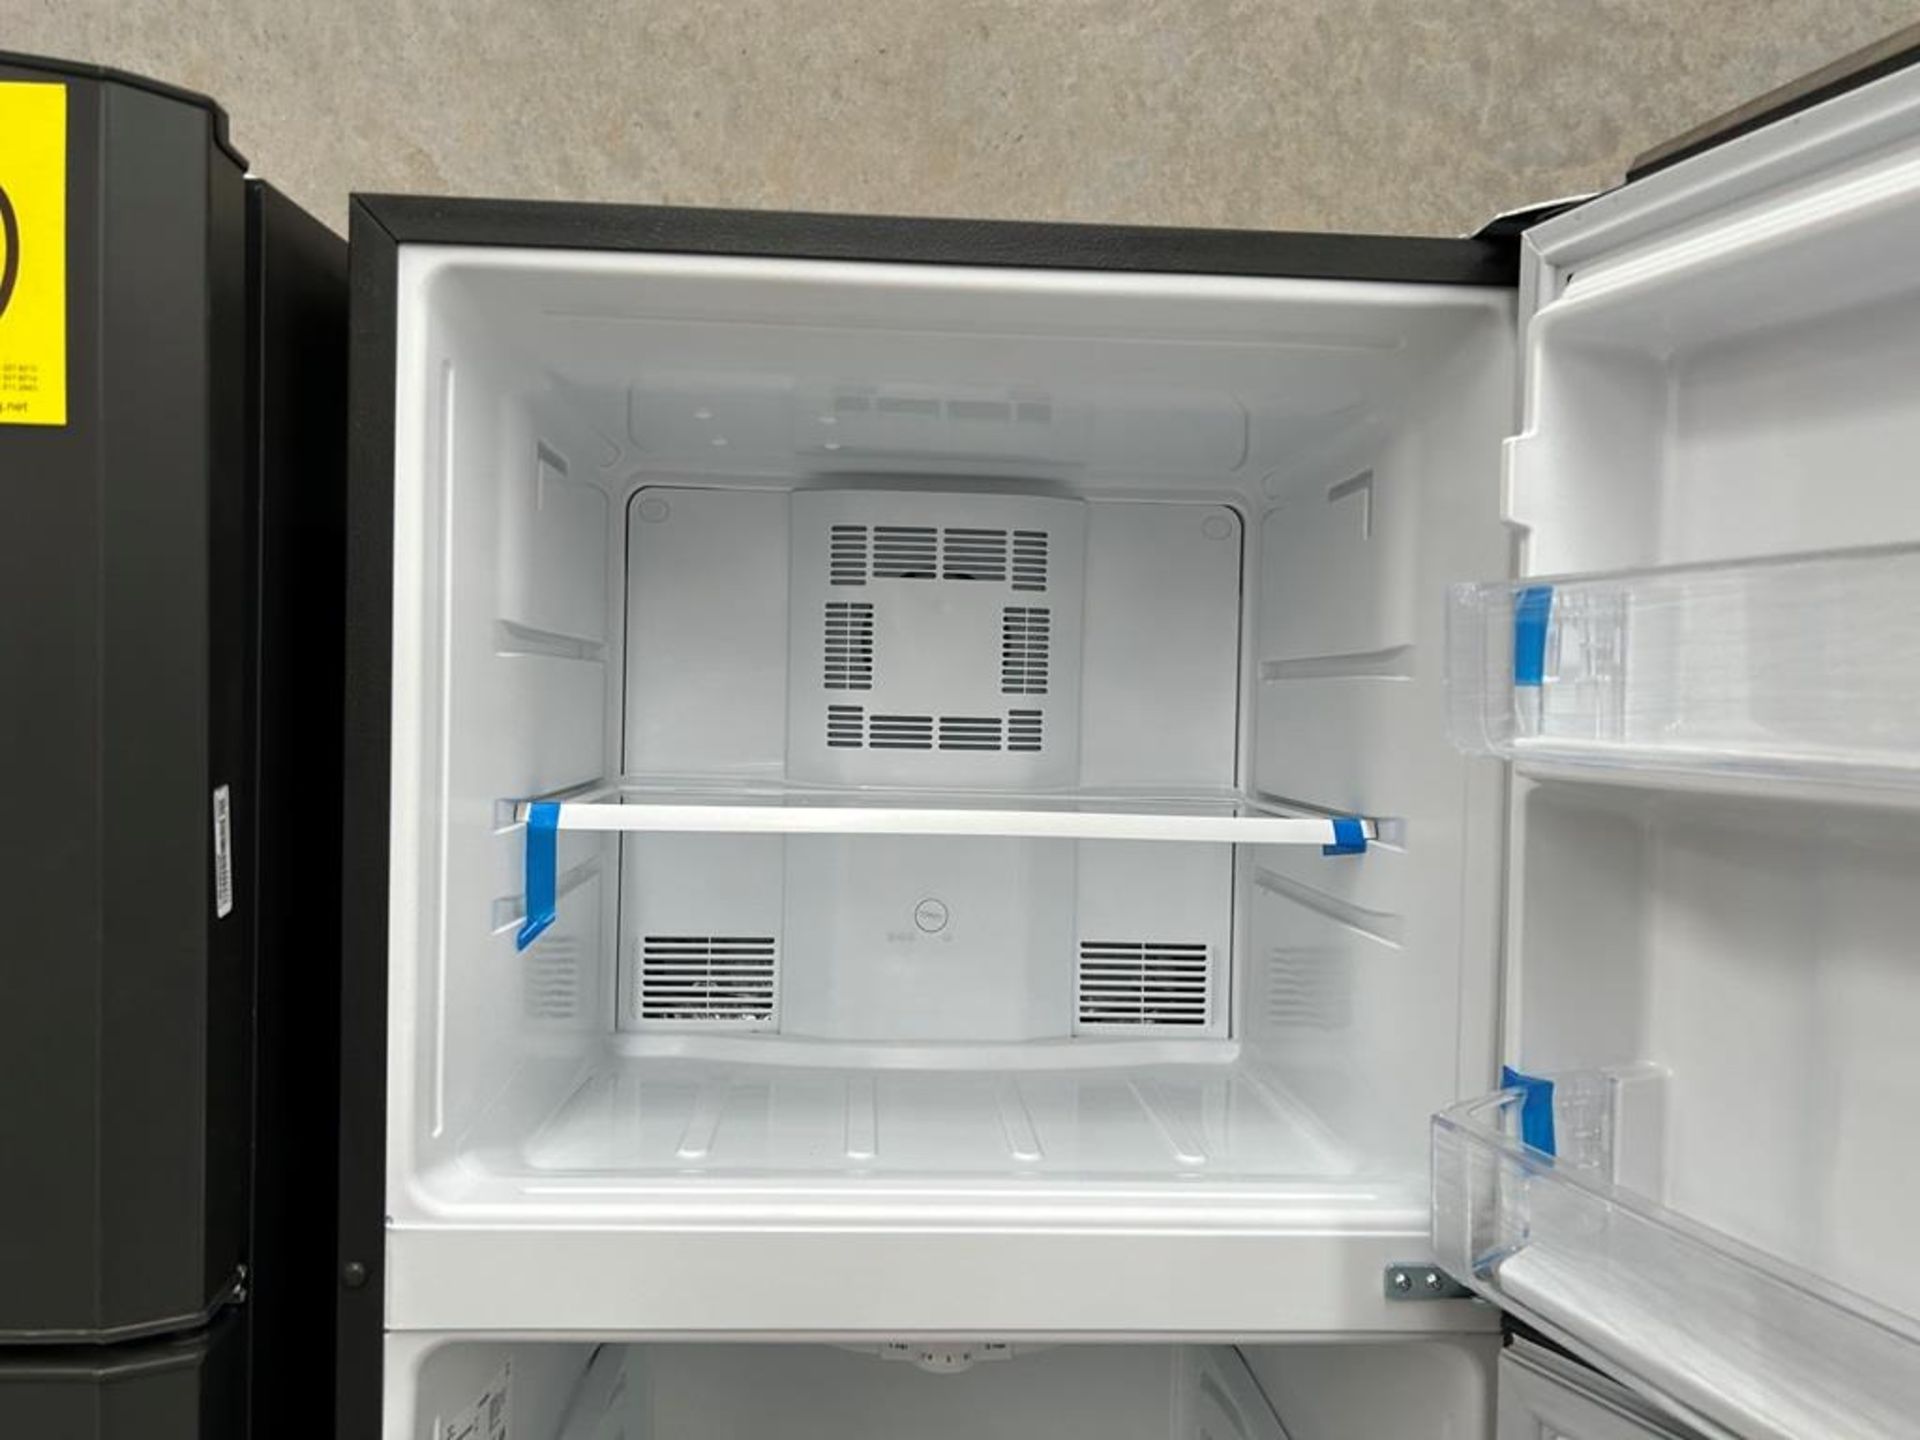 Lote de 2 refrigeradores contiene: 1 Refrigerador con dispensador de agua Marca MABE, Modelo RME360 - Image 11 of 18